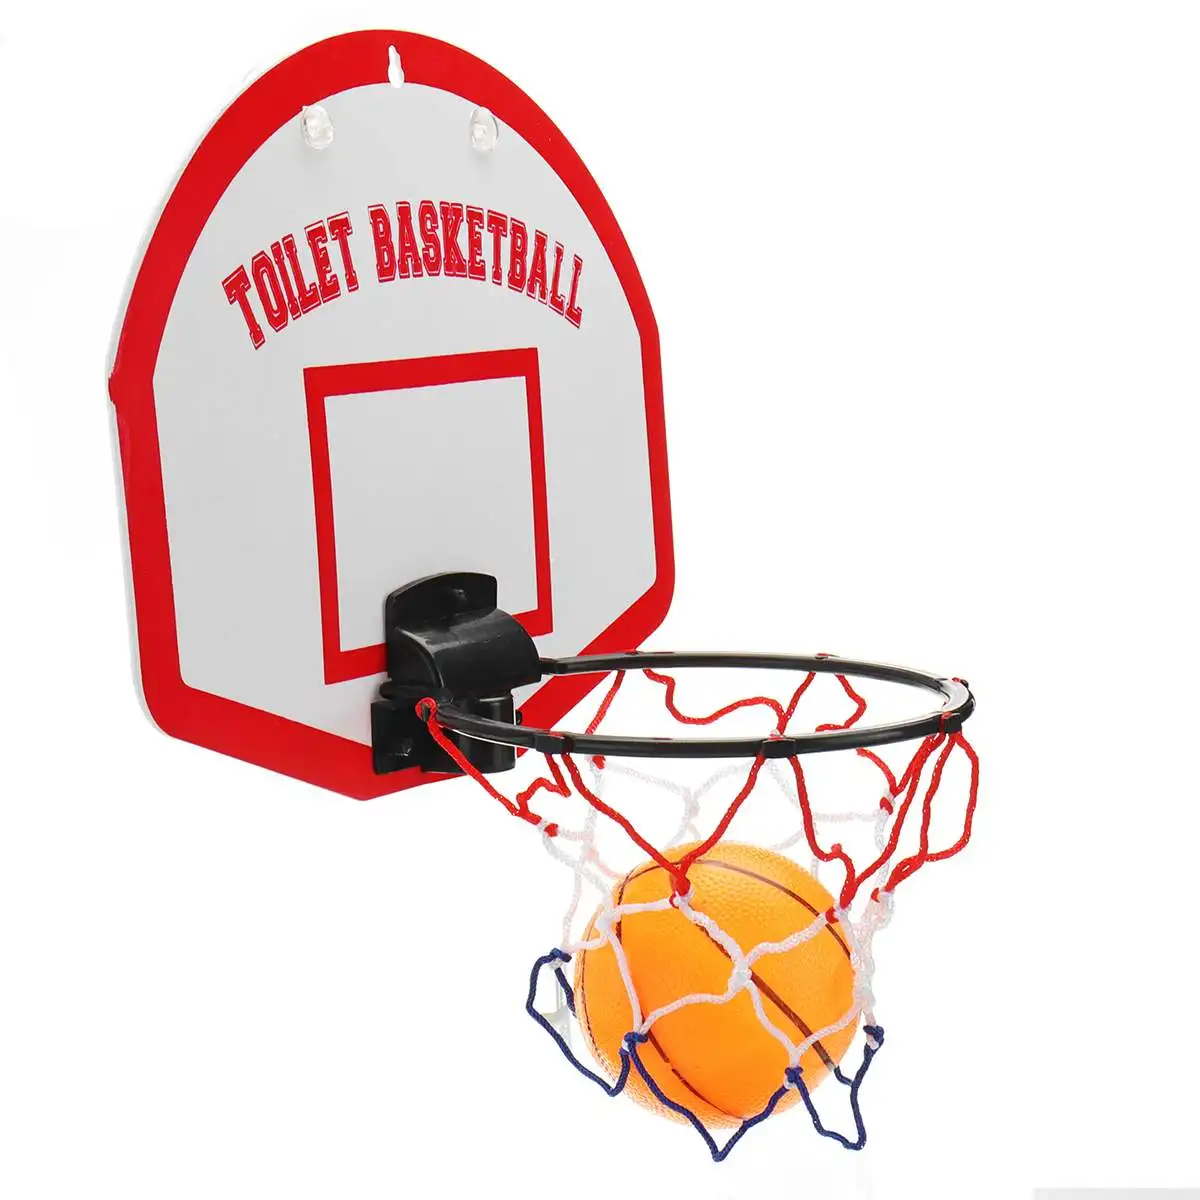 Баскетбольные наборы для туалета 1 корзина+ 3 баскетбольные мяча детские игрушки для ванной Забавный Туалет баскетбольная игра игрушка для детей и взрослых Спорт внутри помещения обучение